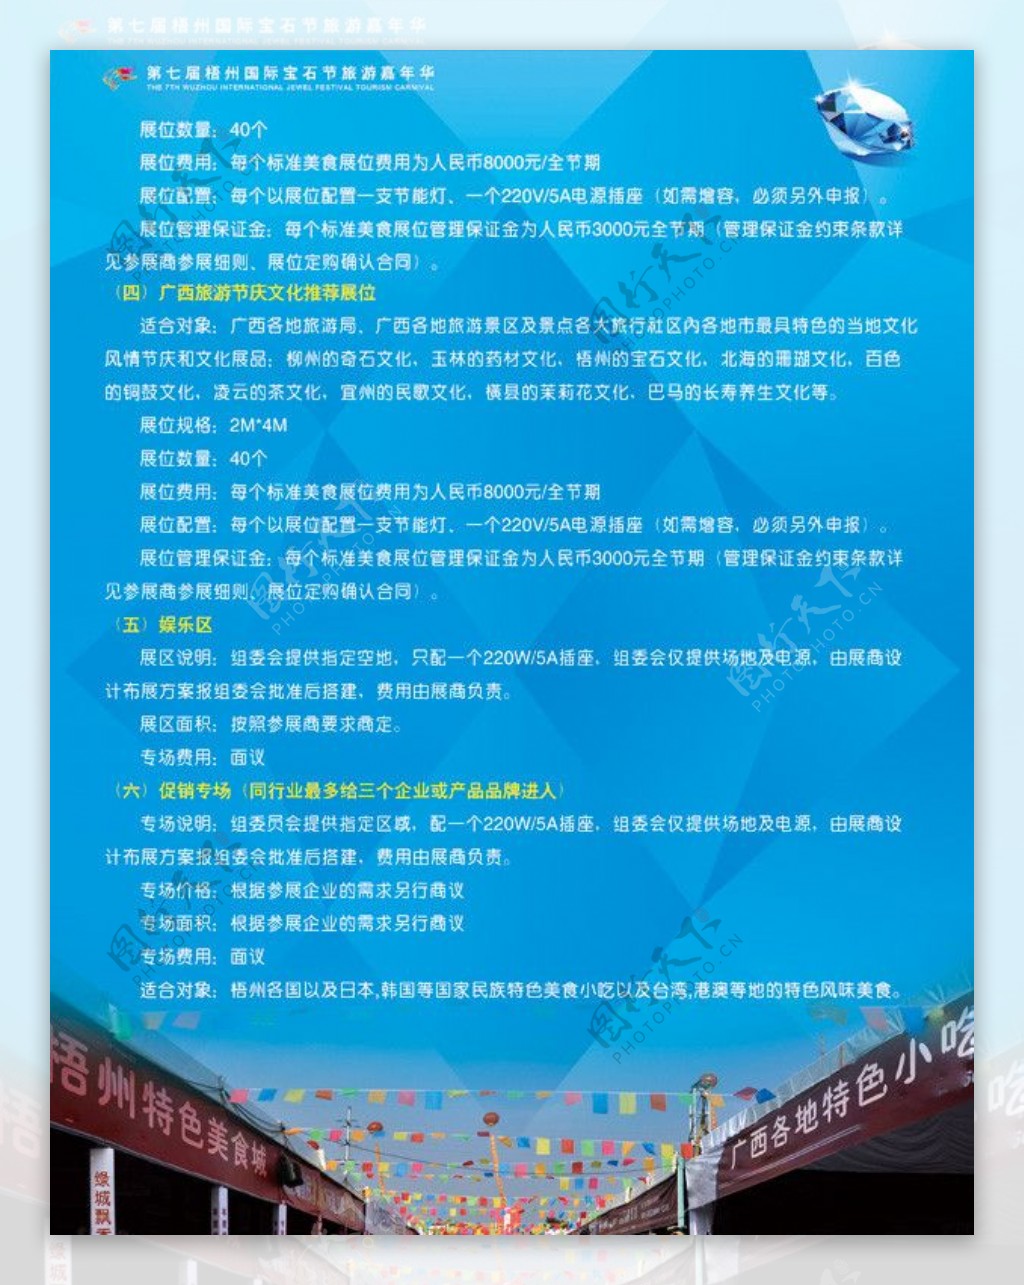 2010第七届梧州国际宝石节旅游嘉年华画册第15页图片